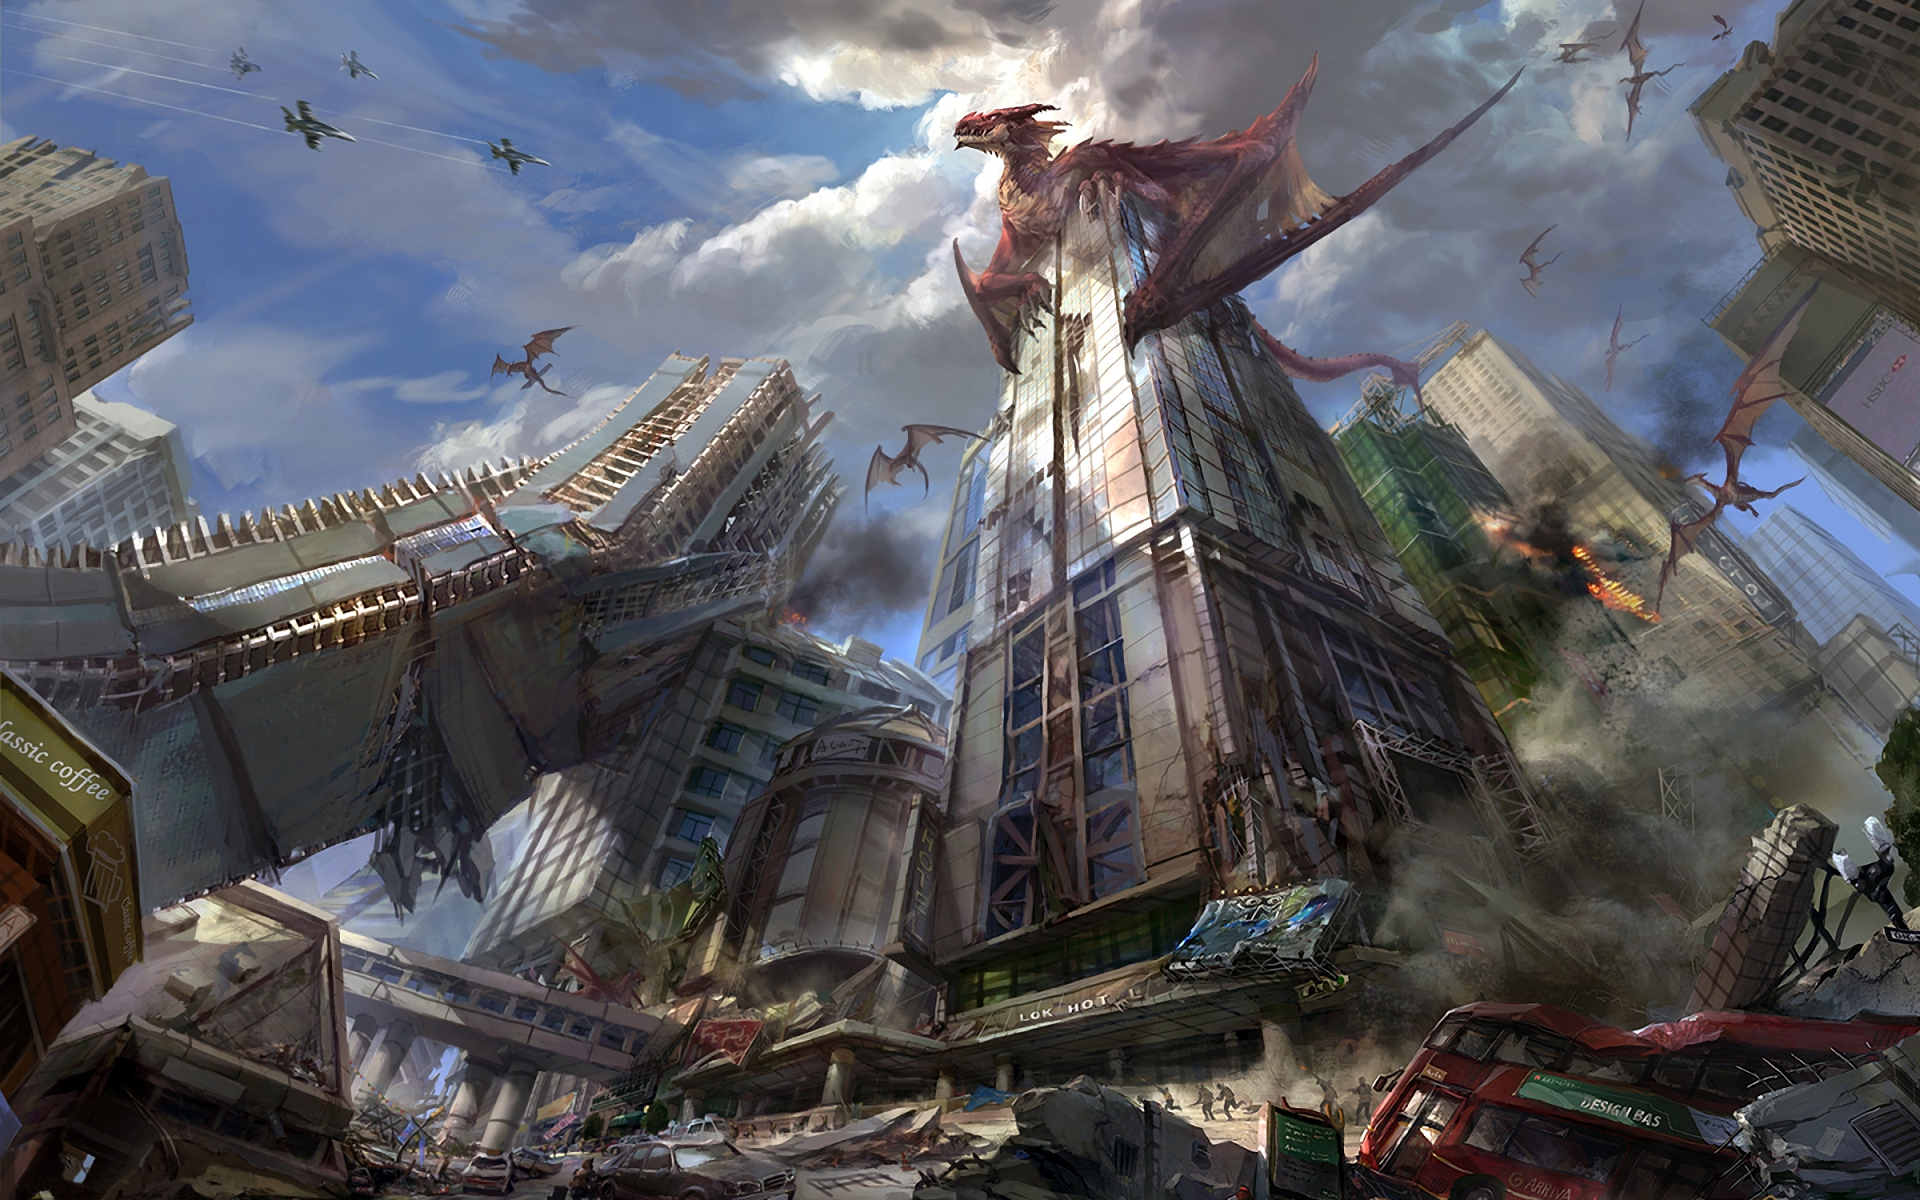 dragon city wallpaper,juego de acción y aventura,juego de pc,juegos,captura de pantalla,mundo